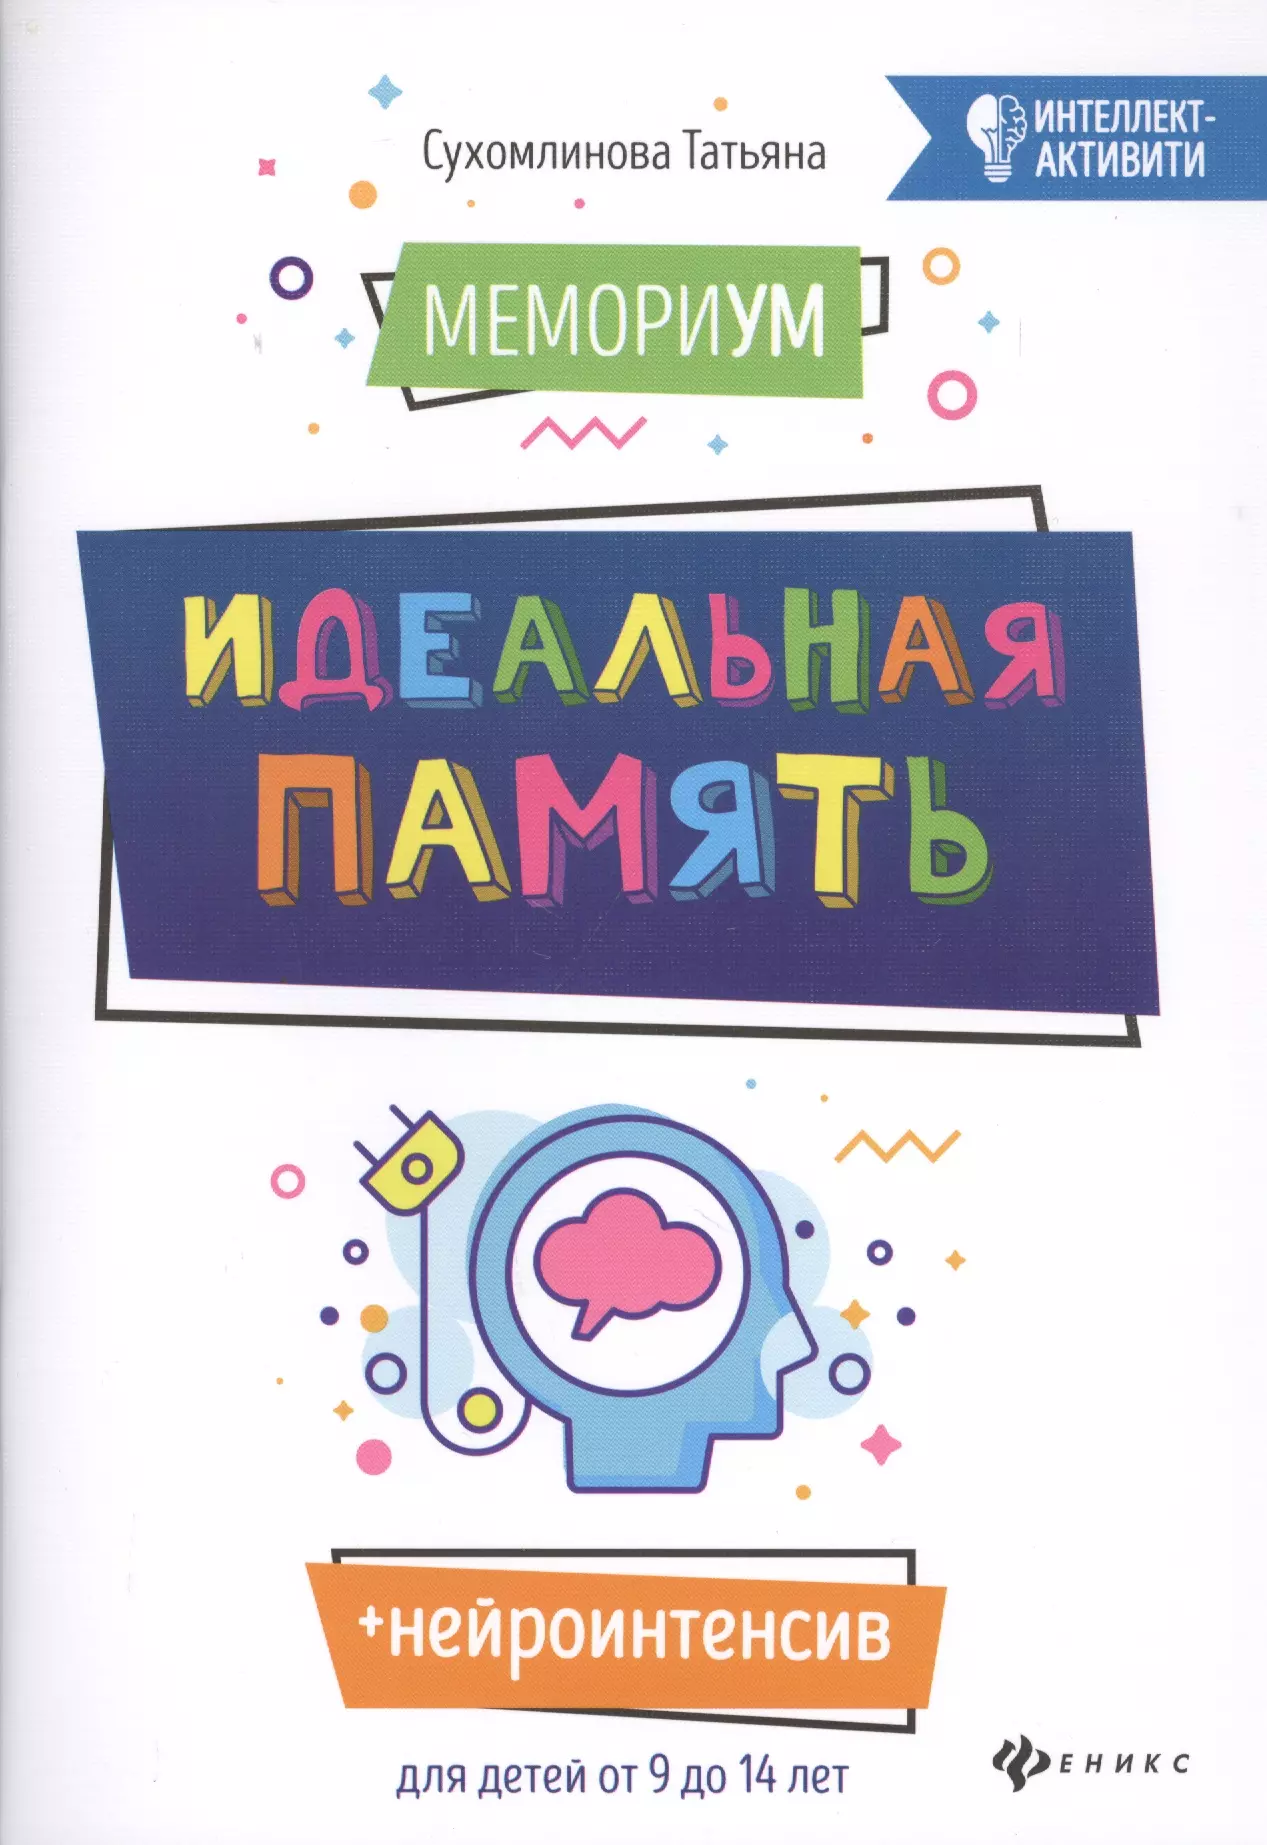 Сухомлинова Татьяна Александровна - МемориУМ: Идеальная память. Для детей от 9 до 14 лет